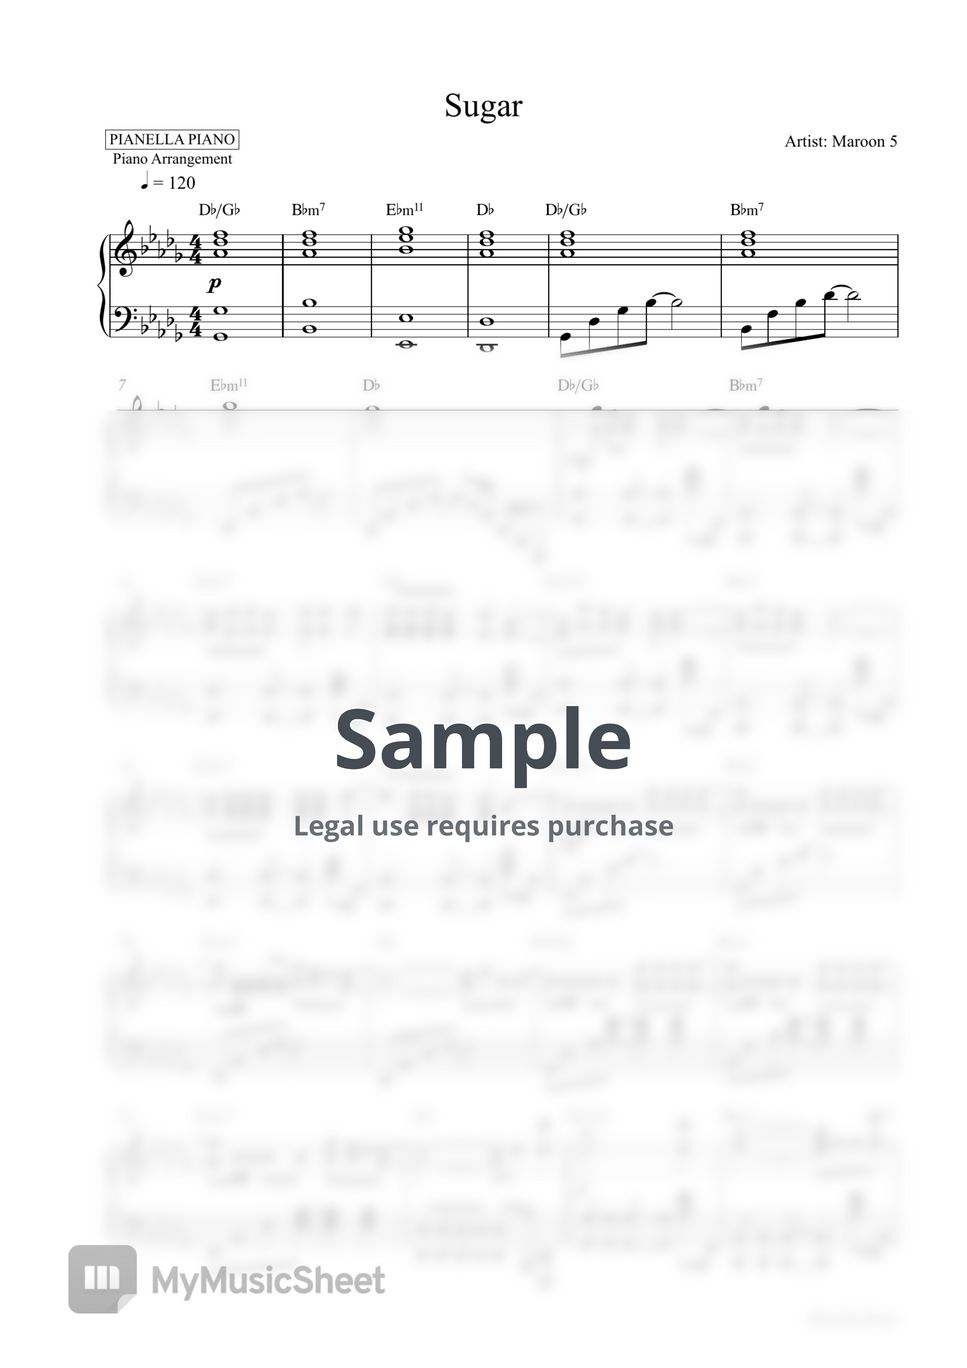 Maroon 5 - Sugar (Piano Sheet) by Pianella Piano